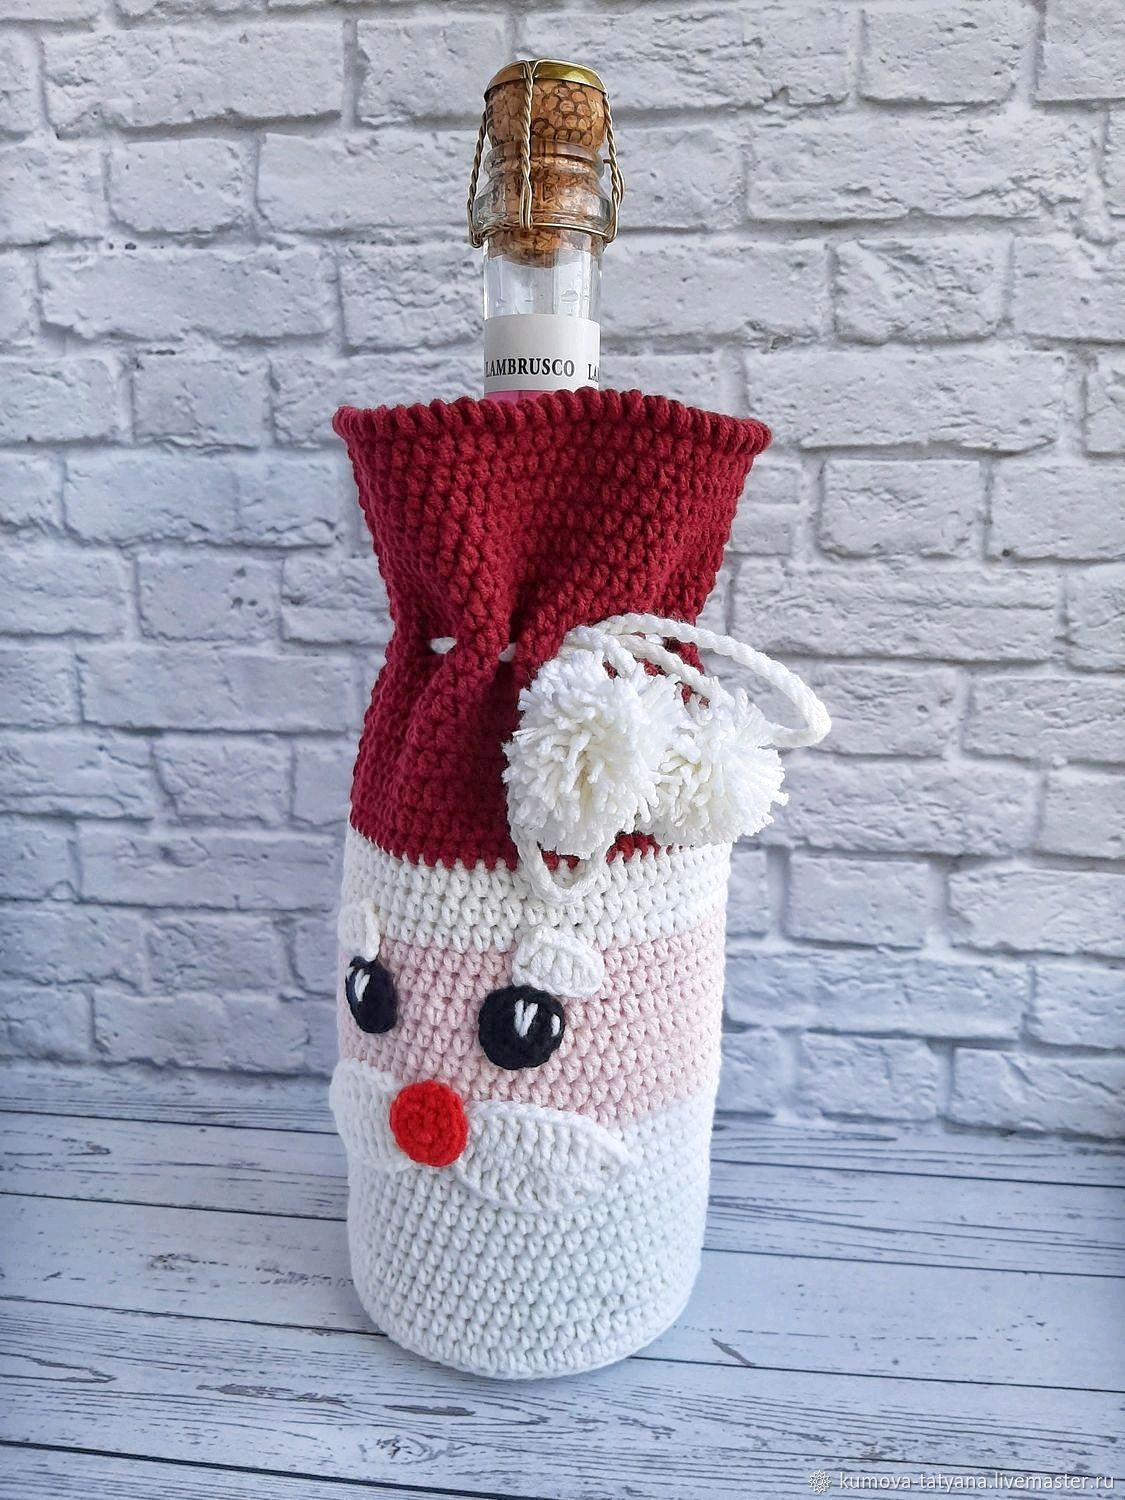 Дед Мороз из пластиковых бутылок – в компании Снеговика и Пингвина